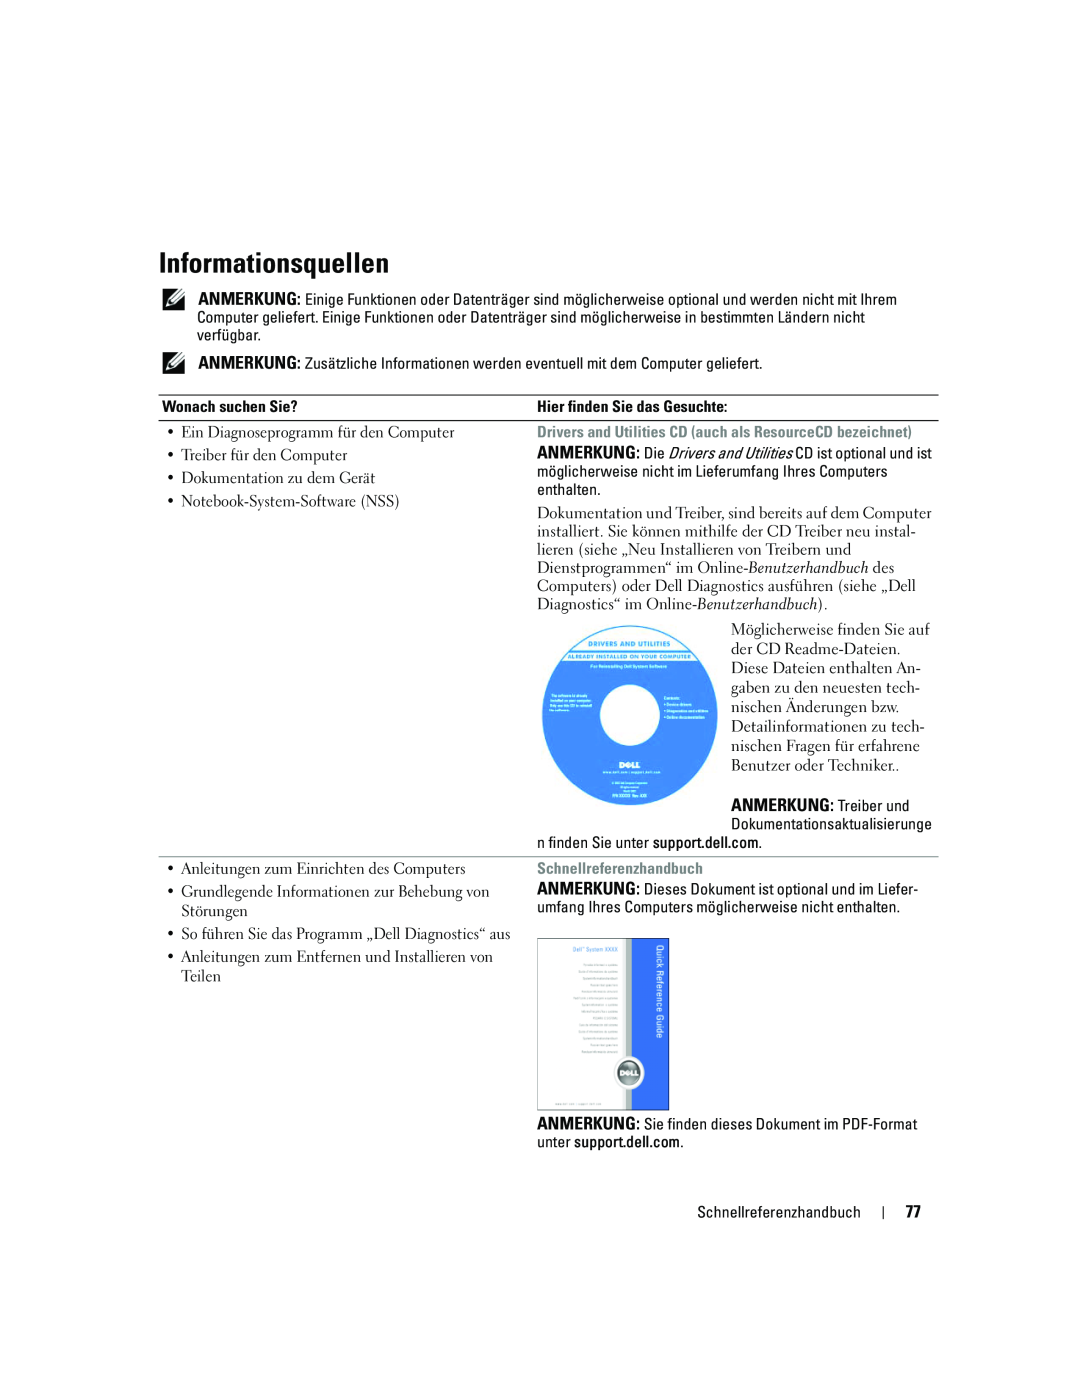 Dell ATG D620 manual Informationsquellen, ANMERKUNG Treiber und, Schnellreferenzhandbuch 